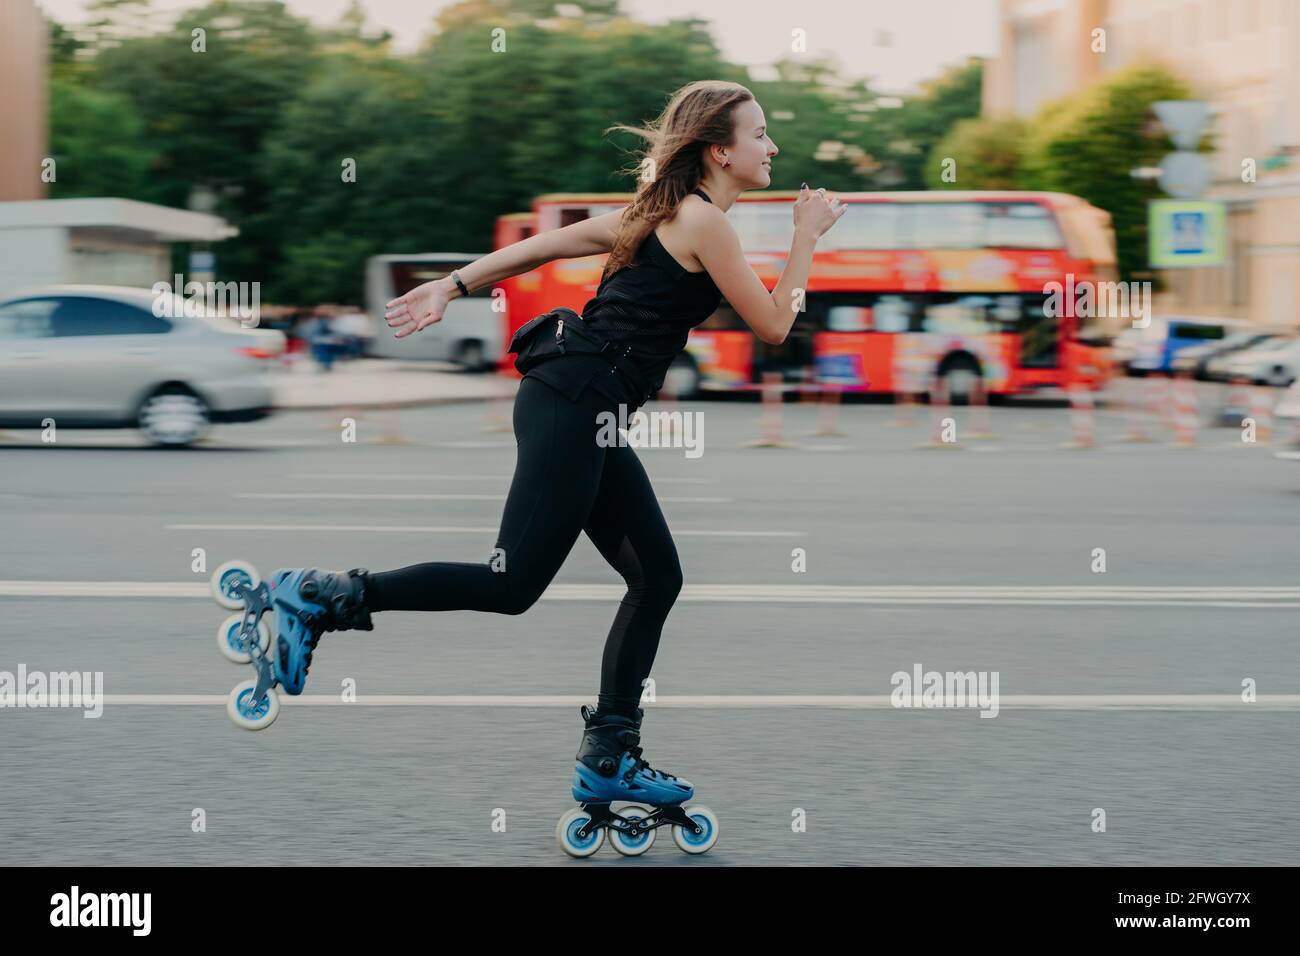 Mujer en patines de con ruedas durante el día de verano en una carretera ajetreada con el transporte lleva el estilo de vida activo se viste negro ropa deportiva Fotografía